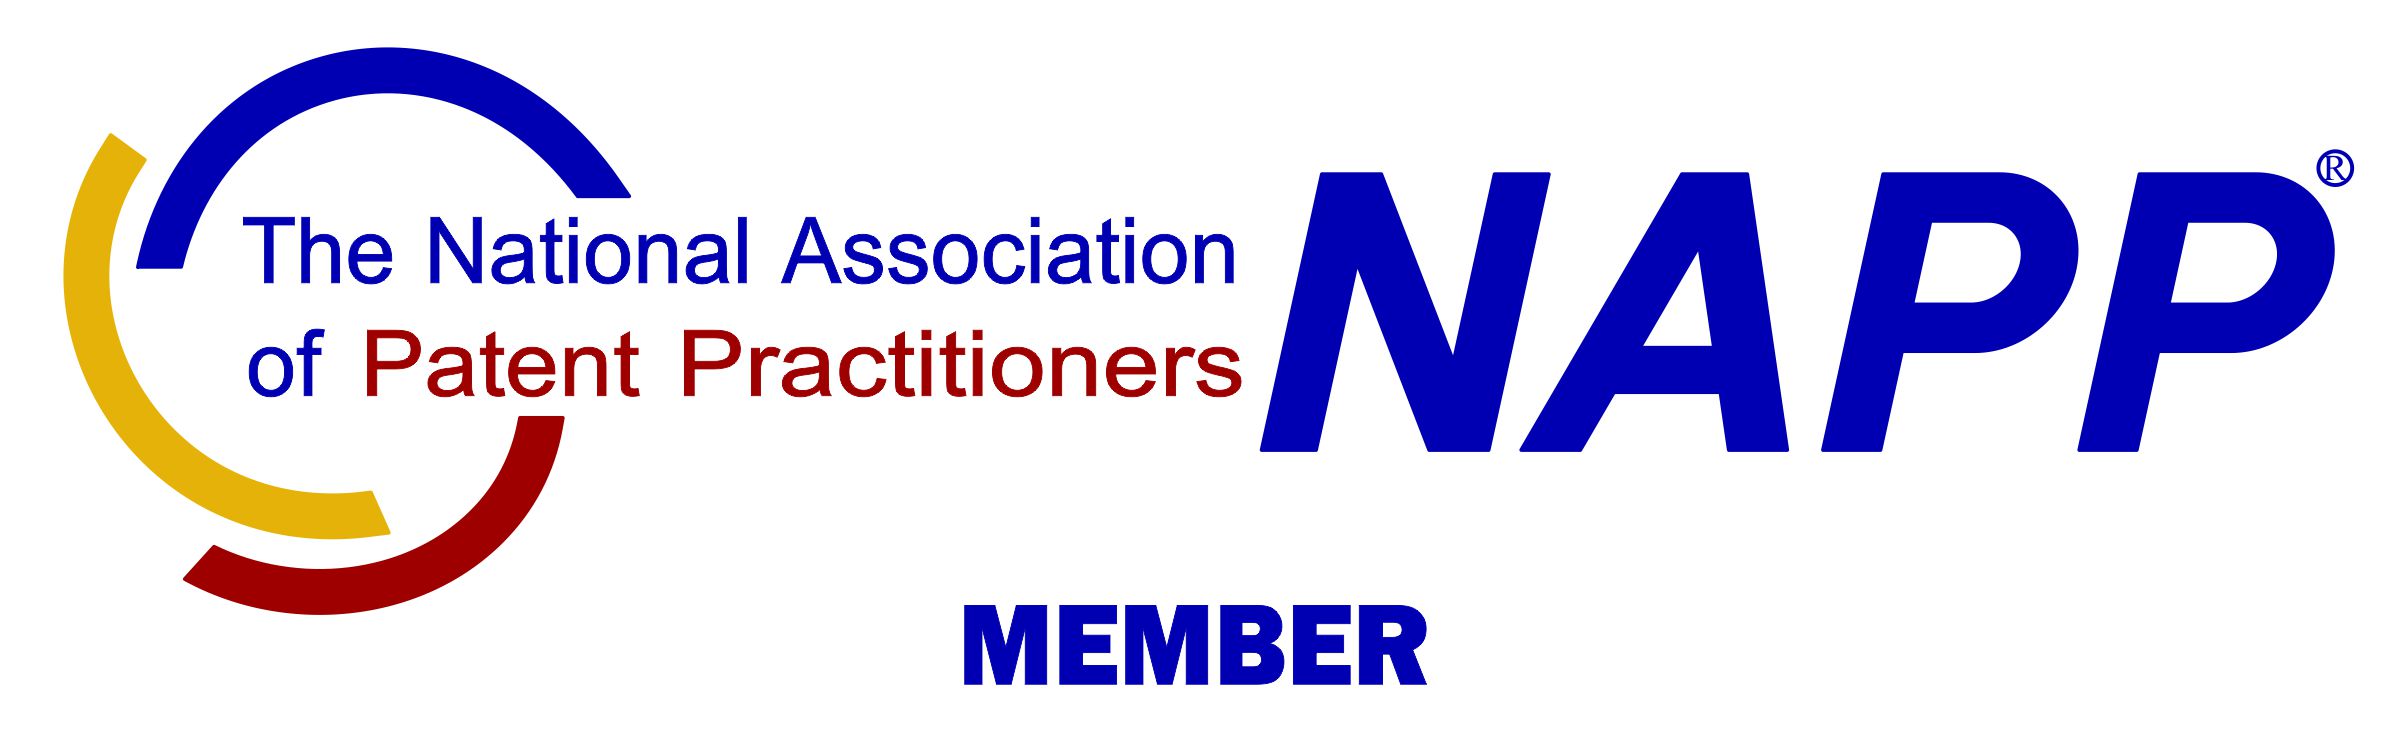 NAPP-logo-Member